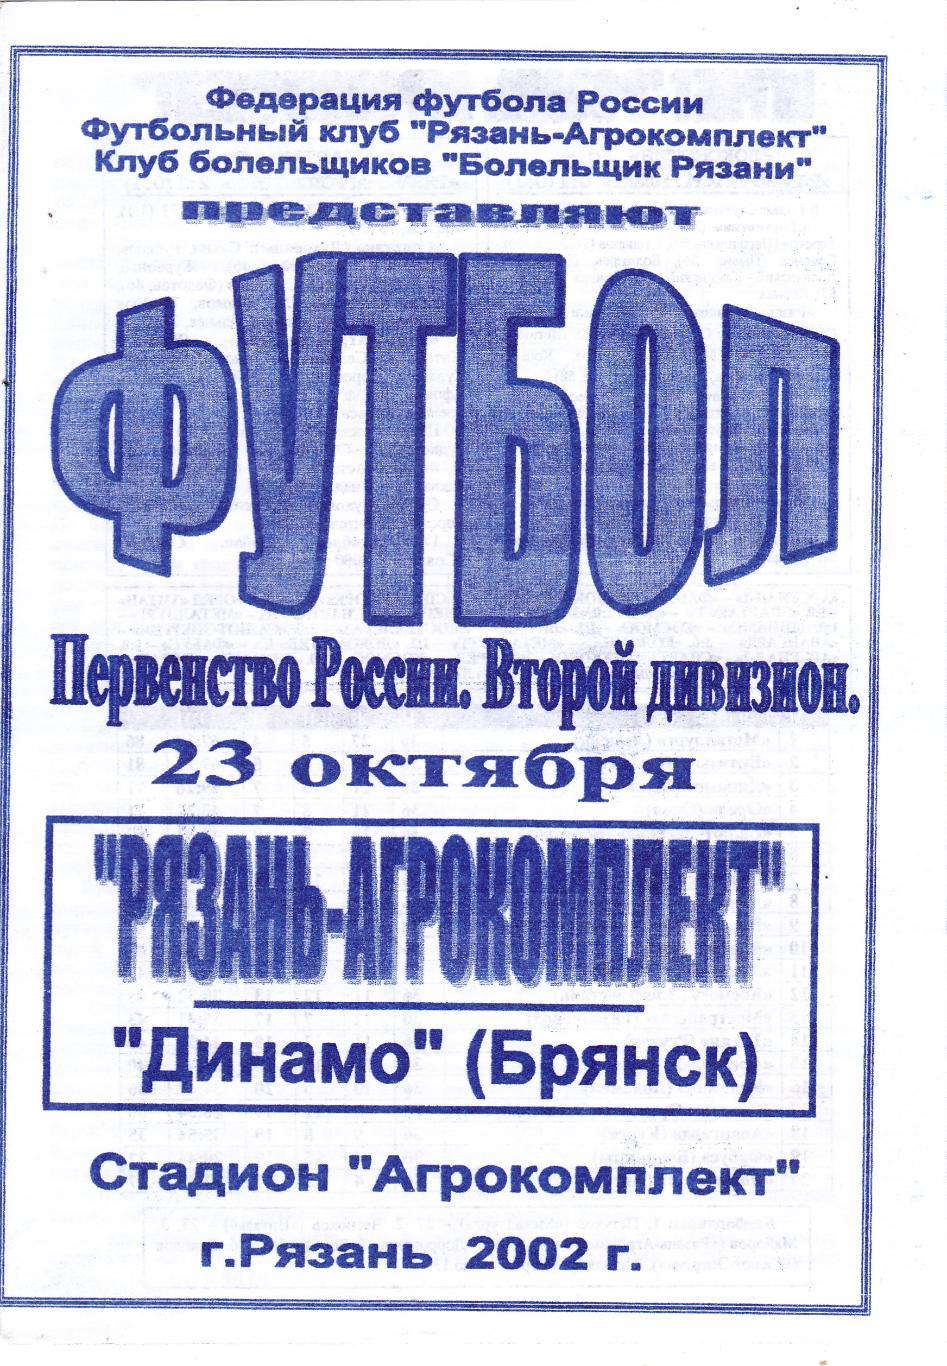 Агрокомплект (Рязань) - Динамо (Брянск) 23.10.2002